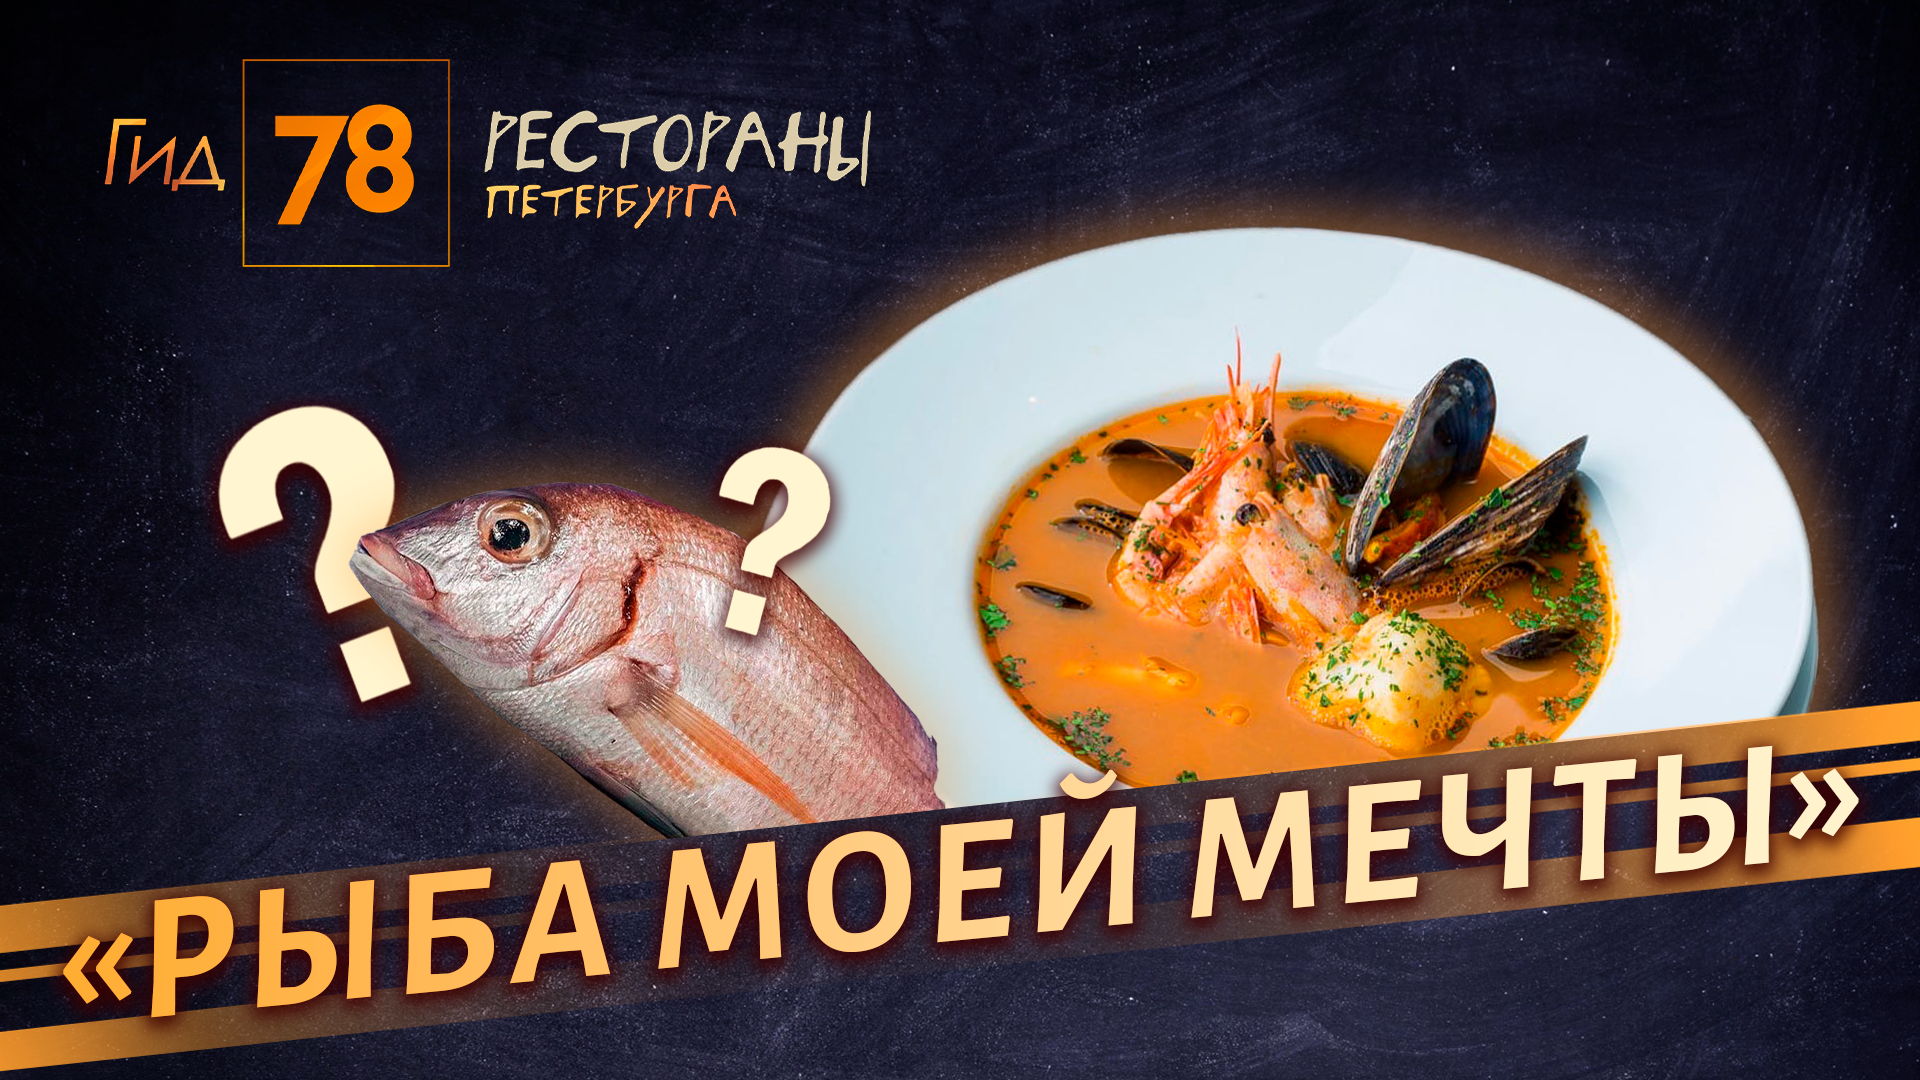 Это червяк?: премиум-ресторан Рыба моей мечты удивил сырой и пустой едой с волосом